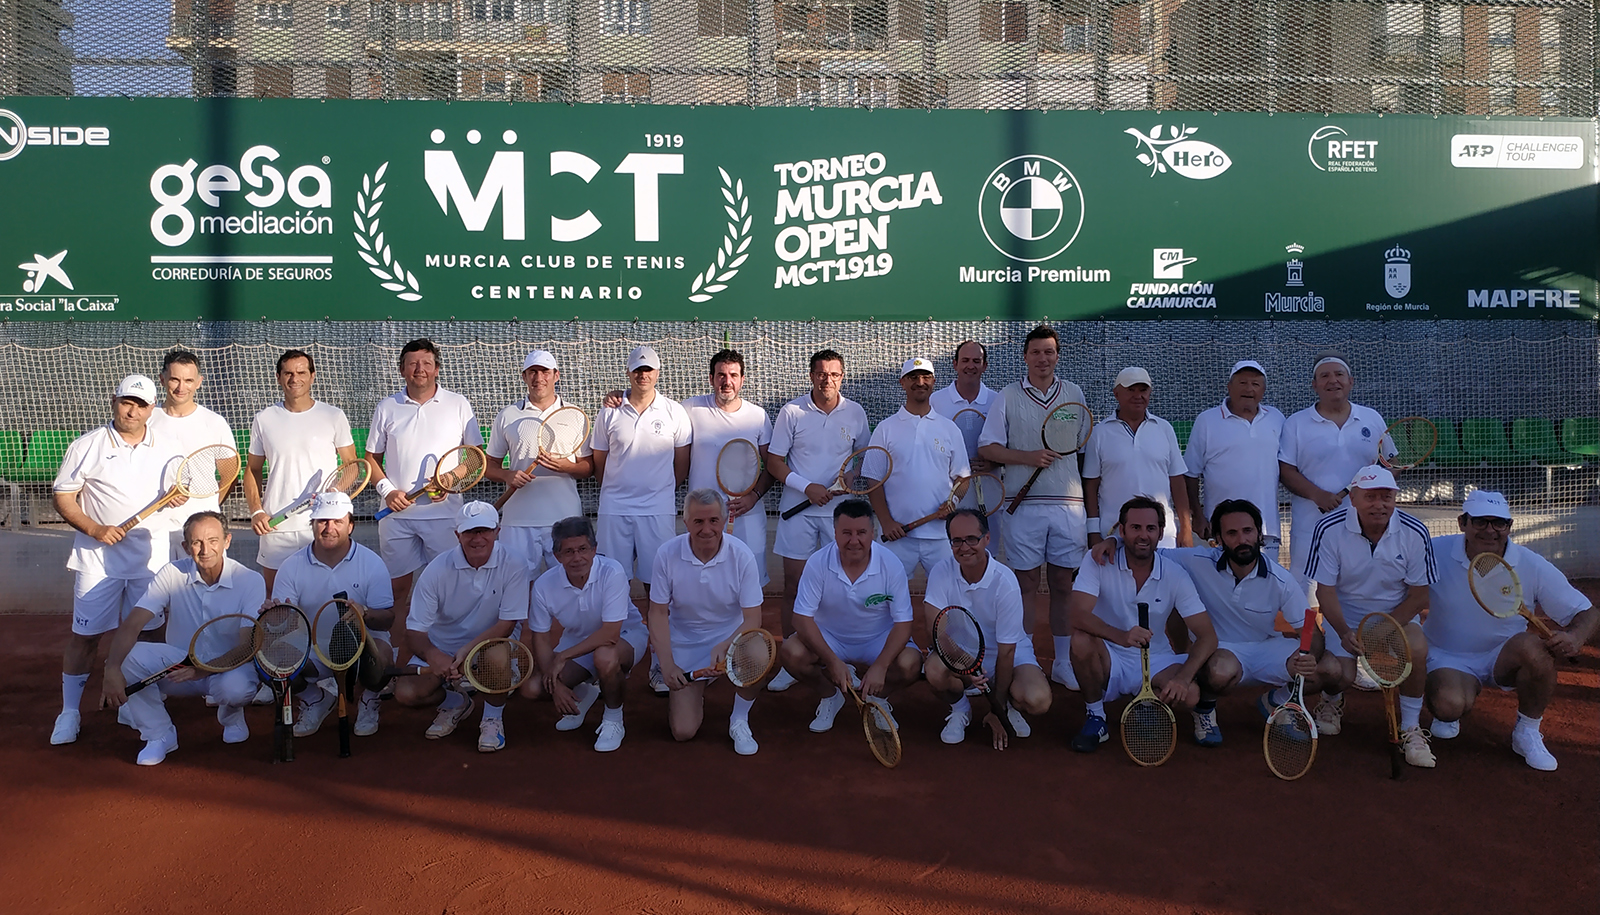 Murcia Club de Tenis, 100 años de compromiso